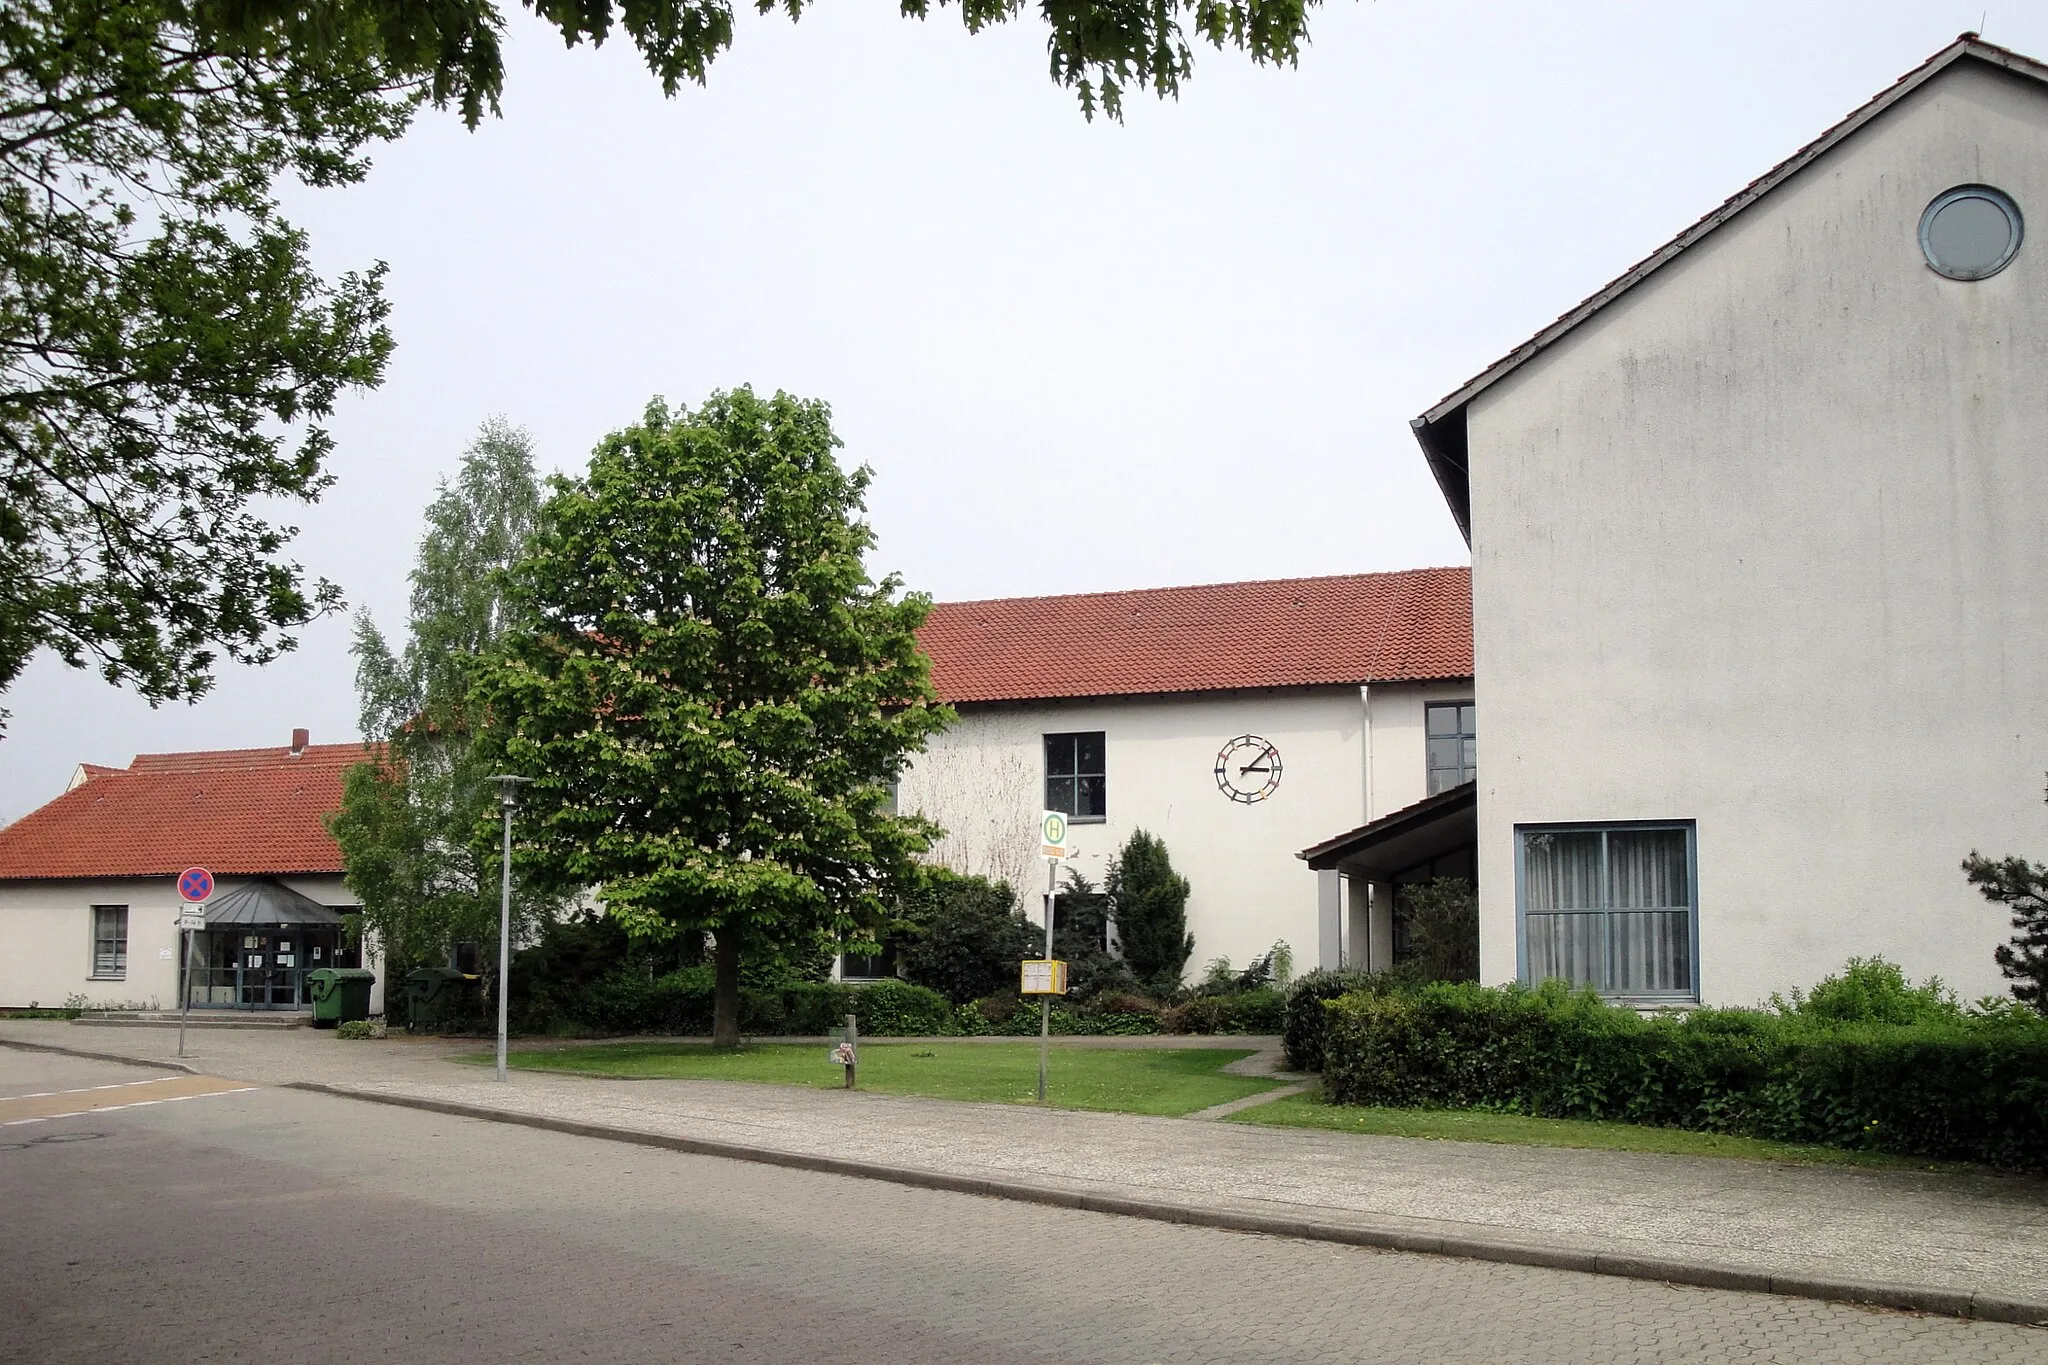 Photo showing: elementary school "Am Zellberg" in Meine, Germany